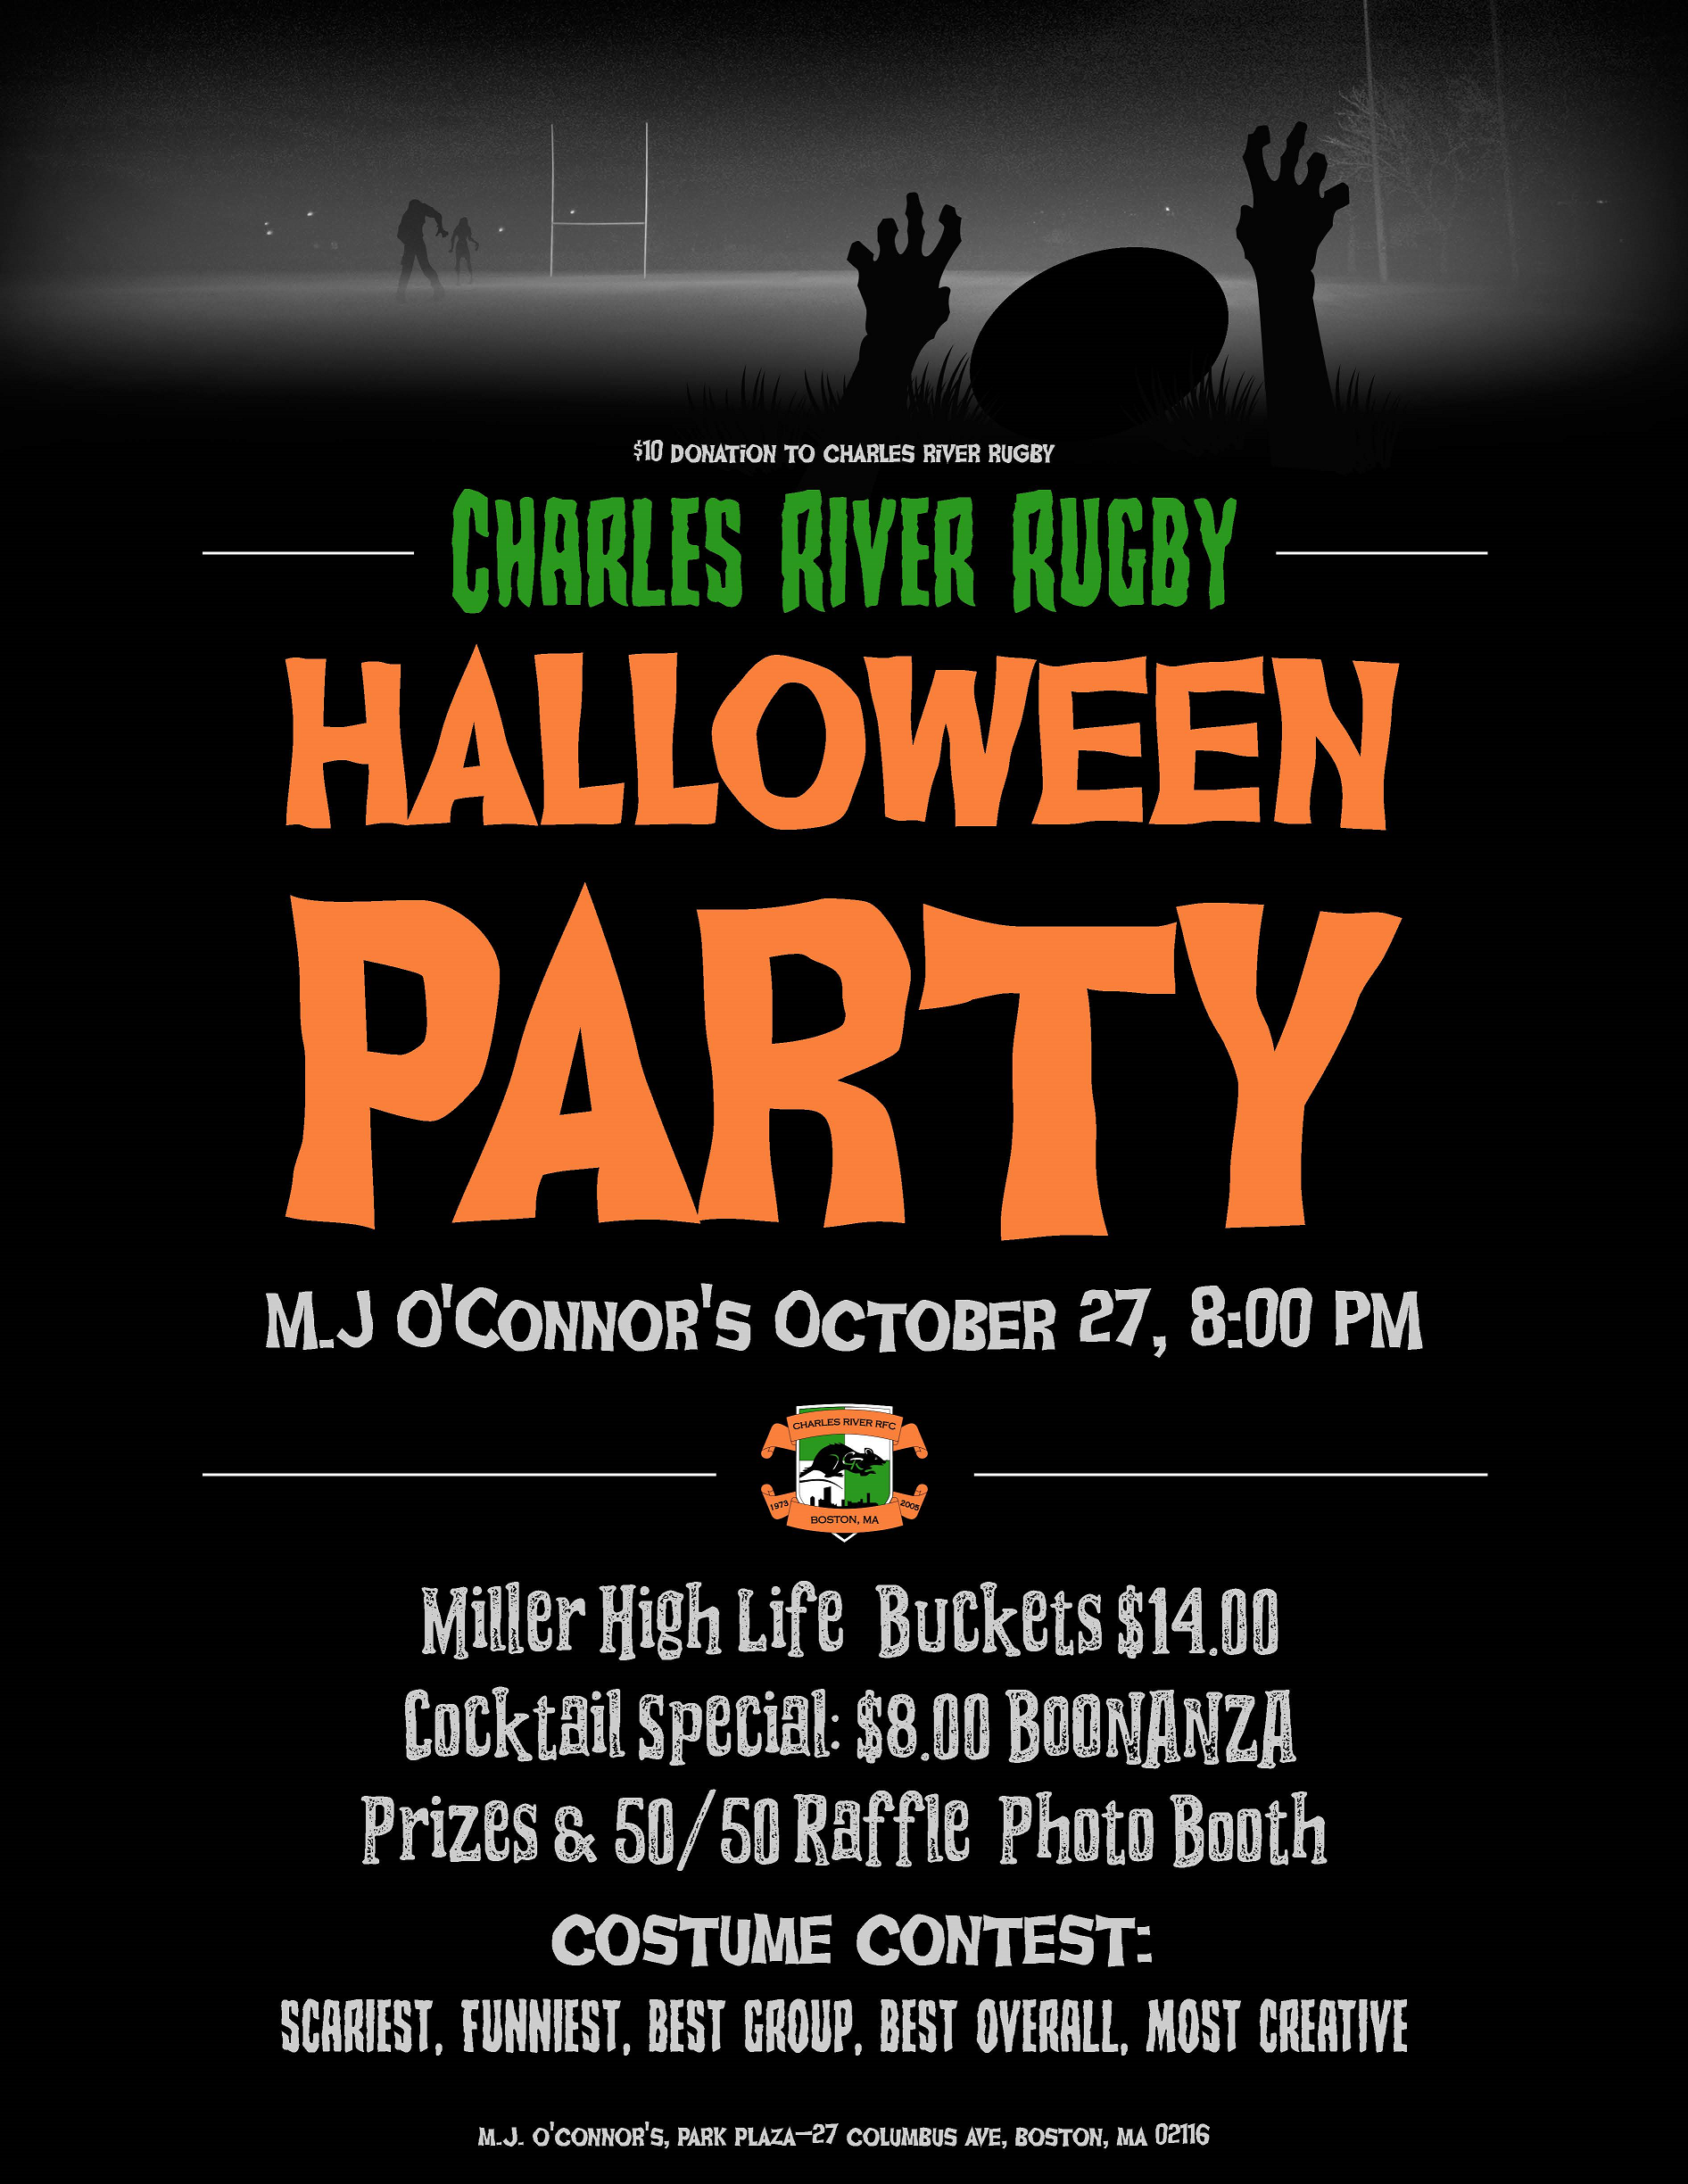 Pesta Halloween Tahunan ke-6 bersama Charles River Rugby!